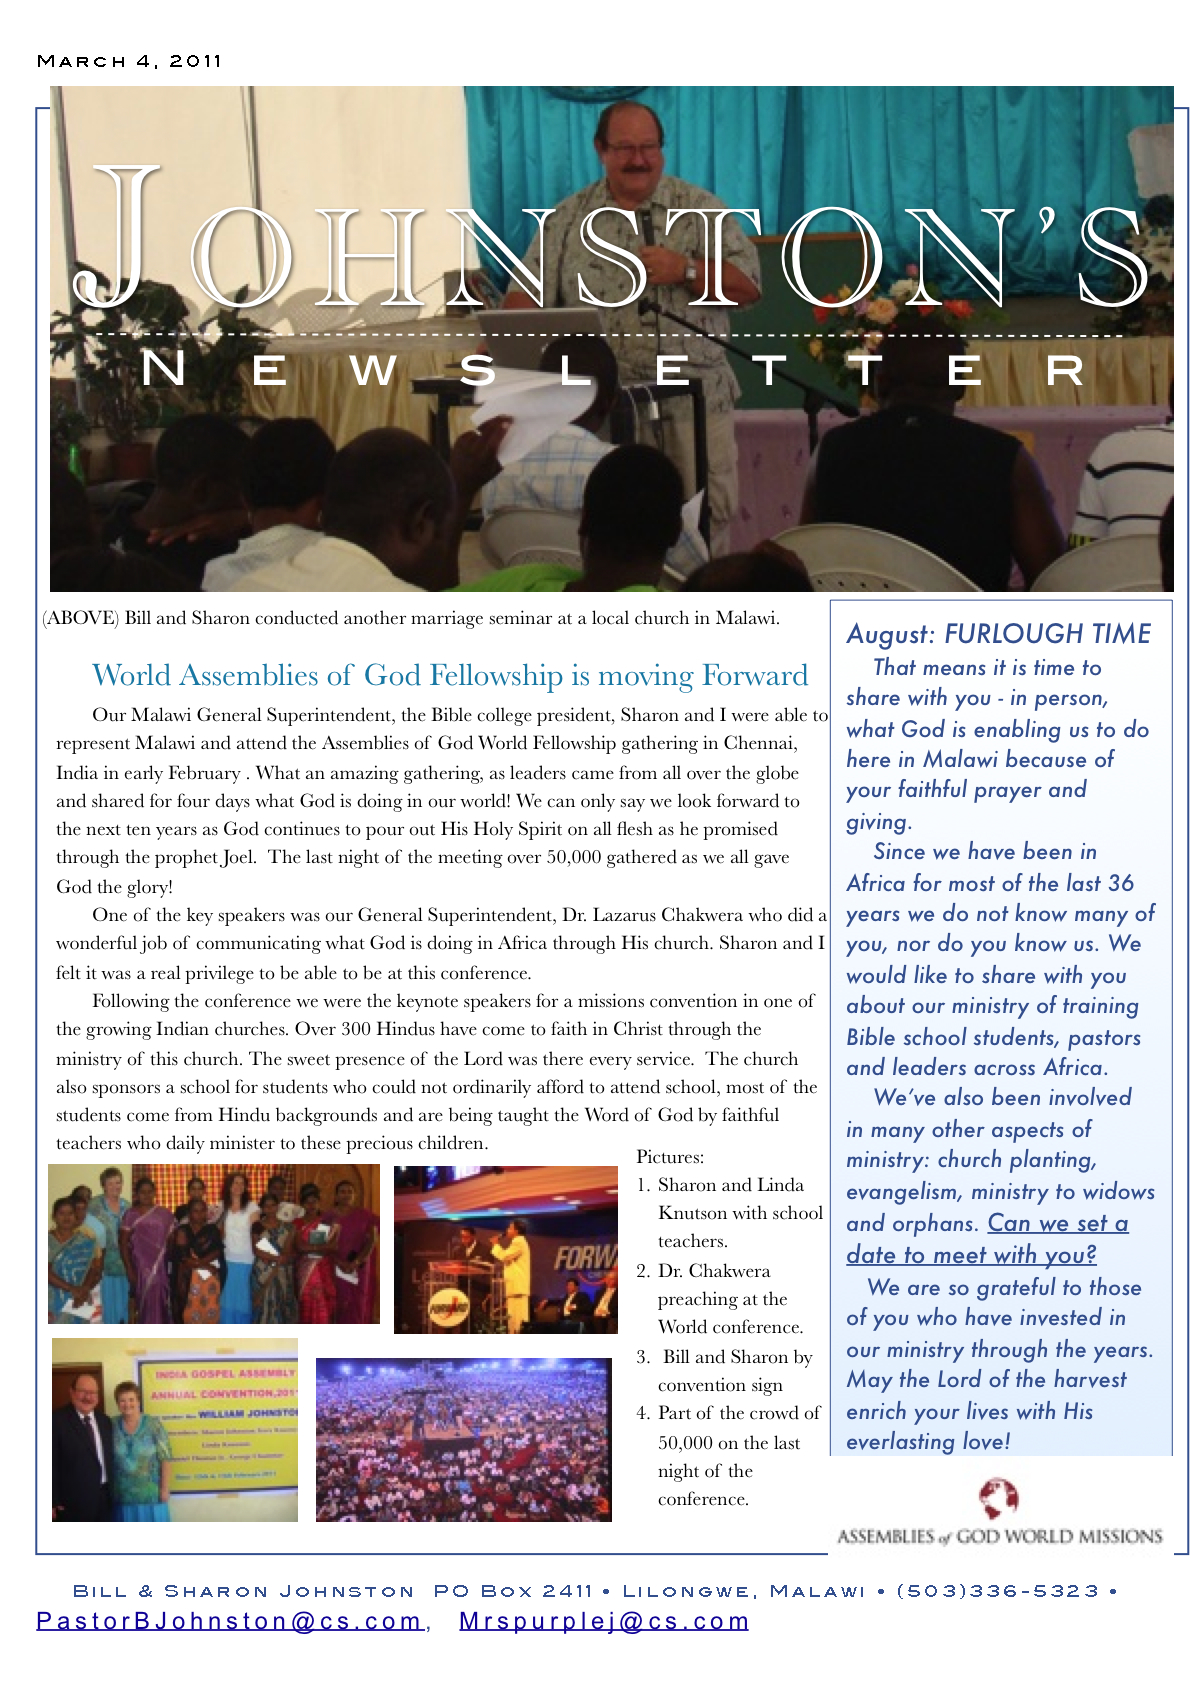 Johnston's November 2010 newsletter